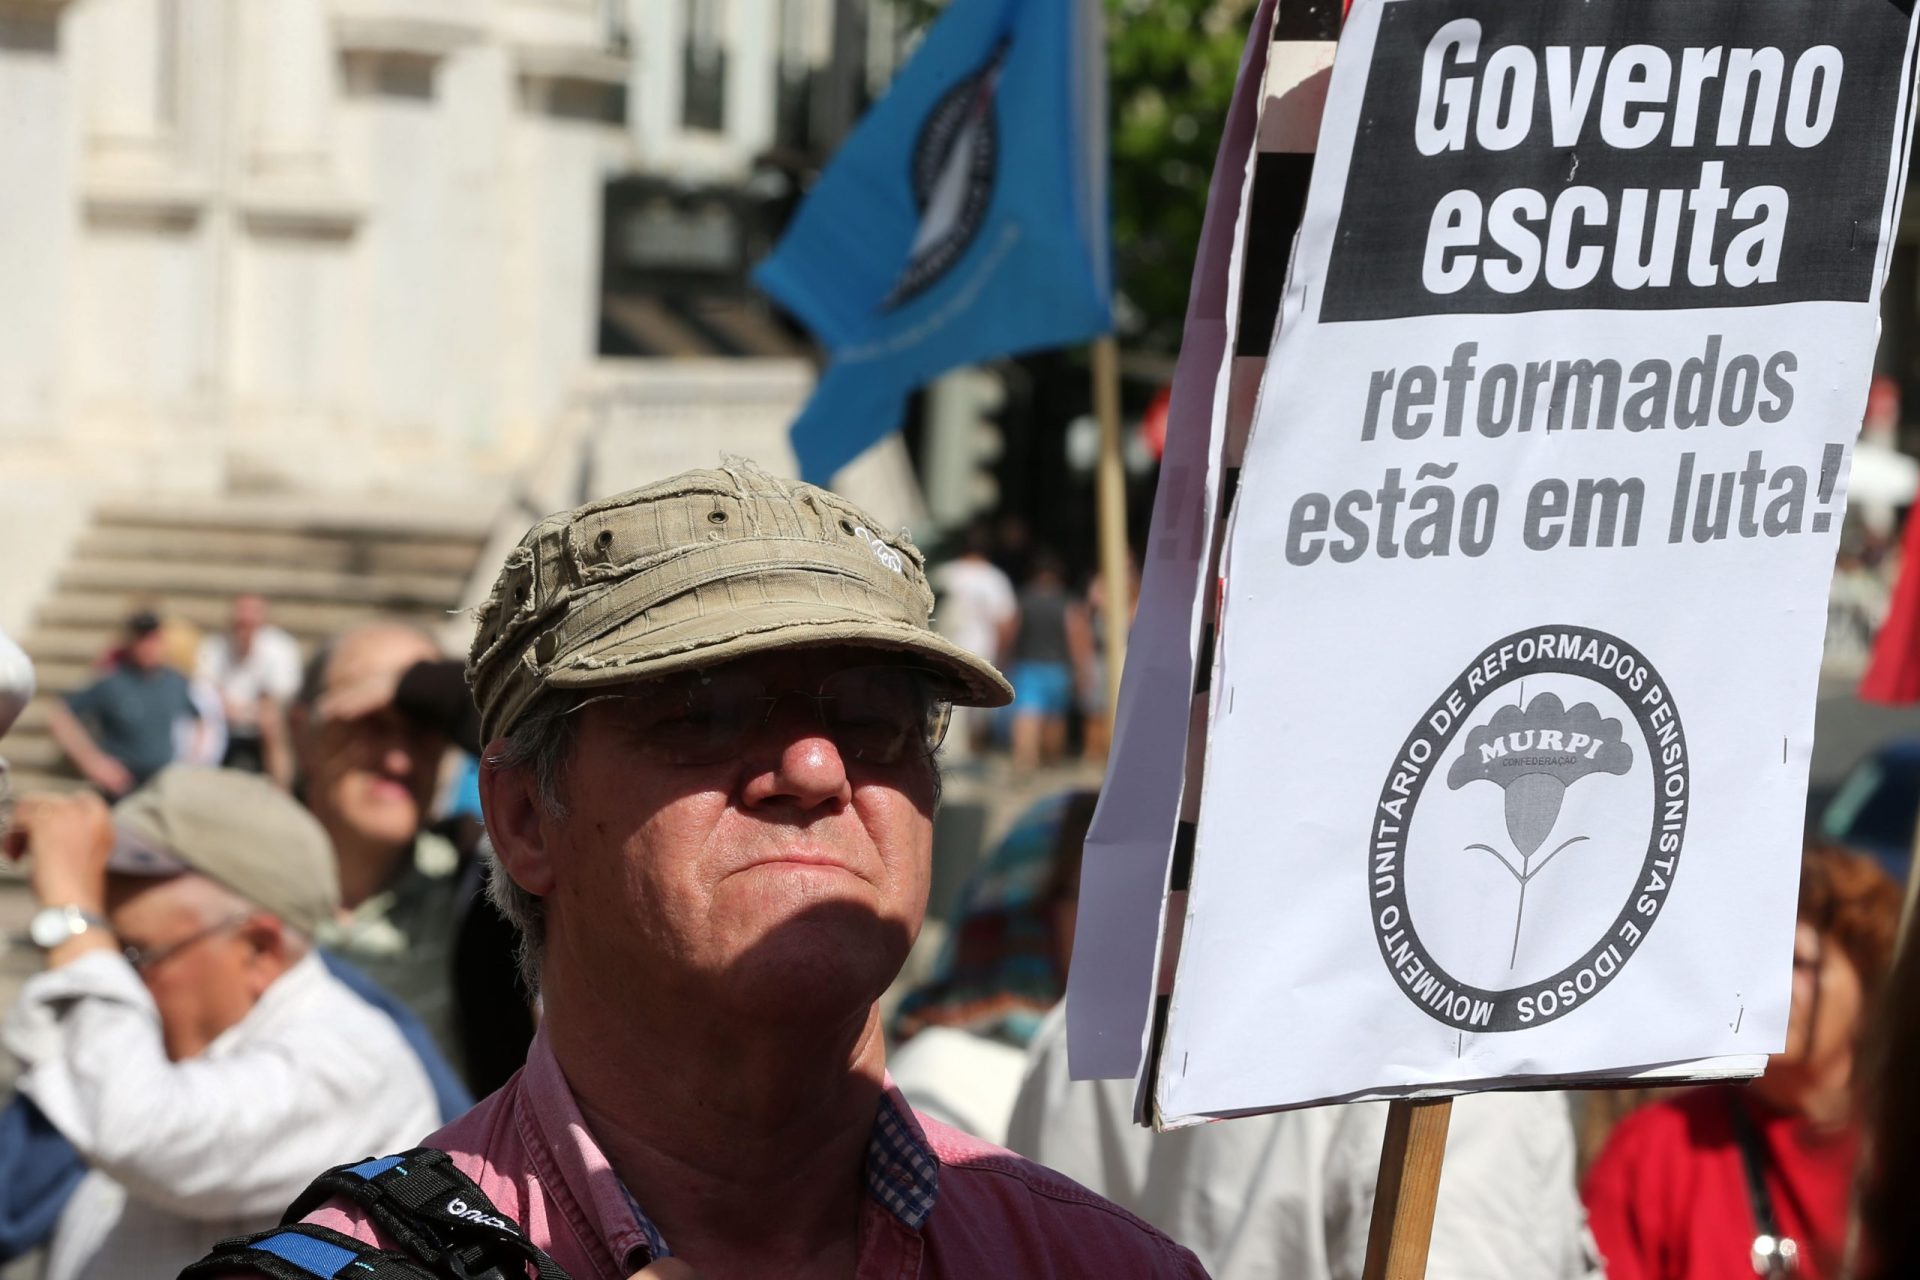 Reformados em protesto exigem aumentos de 4,7% nas pensões